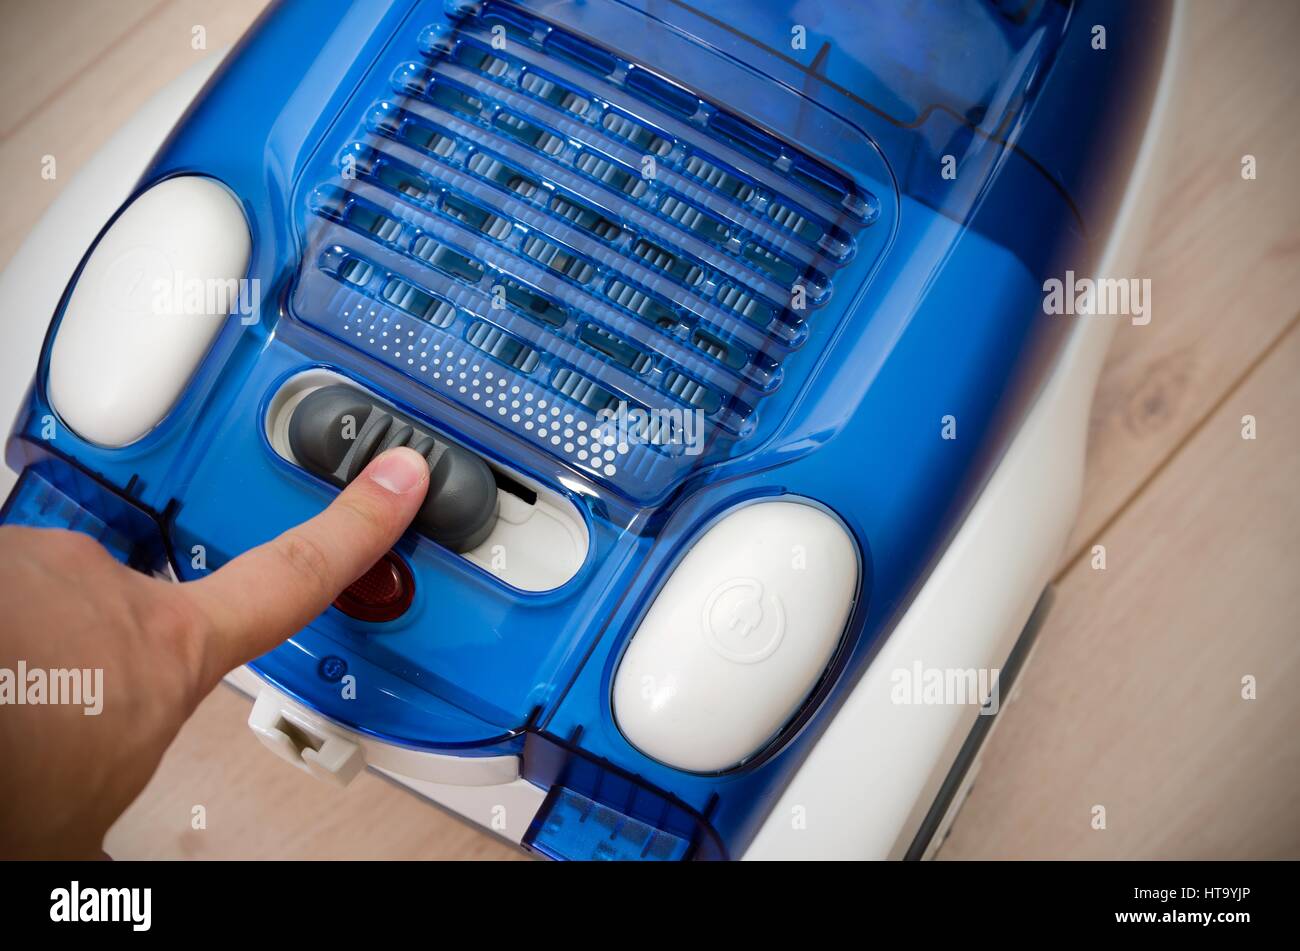 Handschalter setzt die Leistungseffizienz des Staubsaugers. Energieeinsparung und Energieeffizienz Geräte. Stockfoto